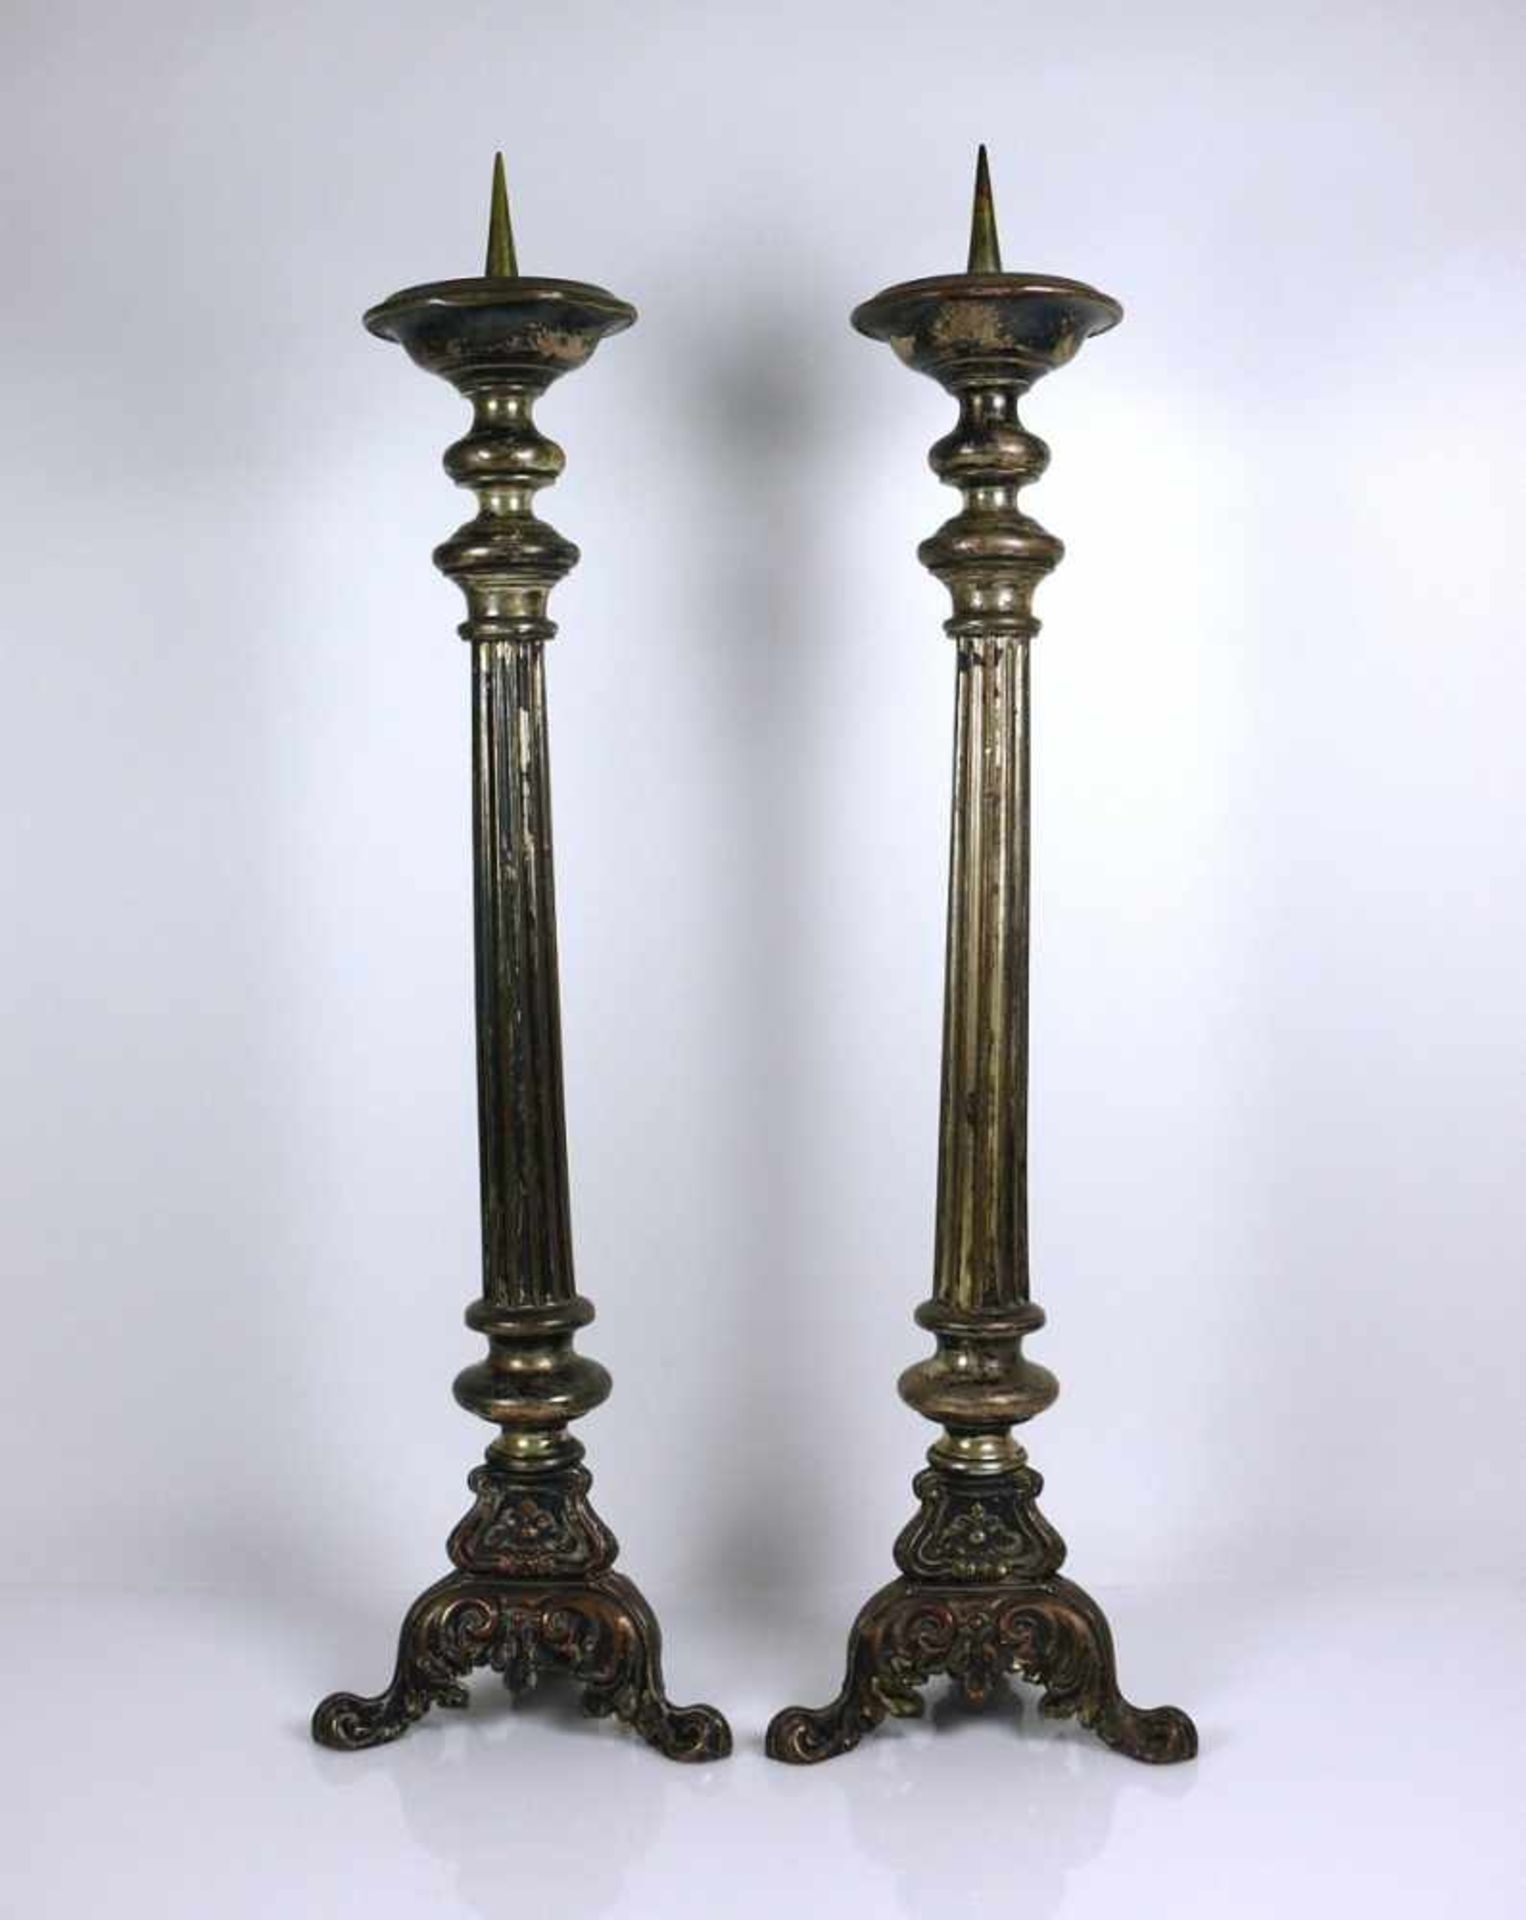 Paar Altarleuchter (18.Jh.) auf 3-passigem geschneckt auslaufendem Fuß; kannelierter, leicht